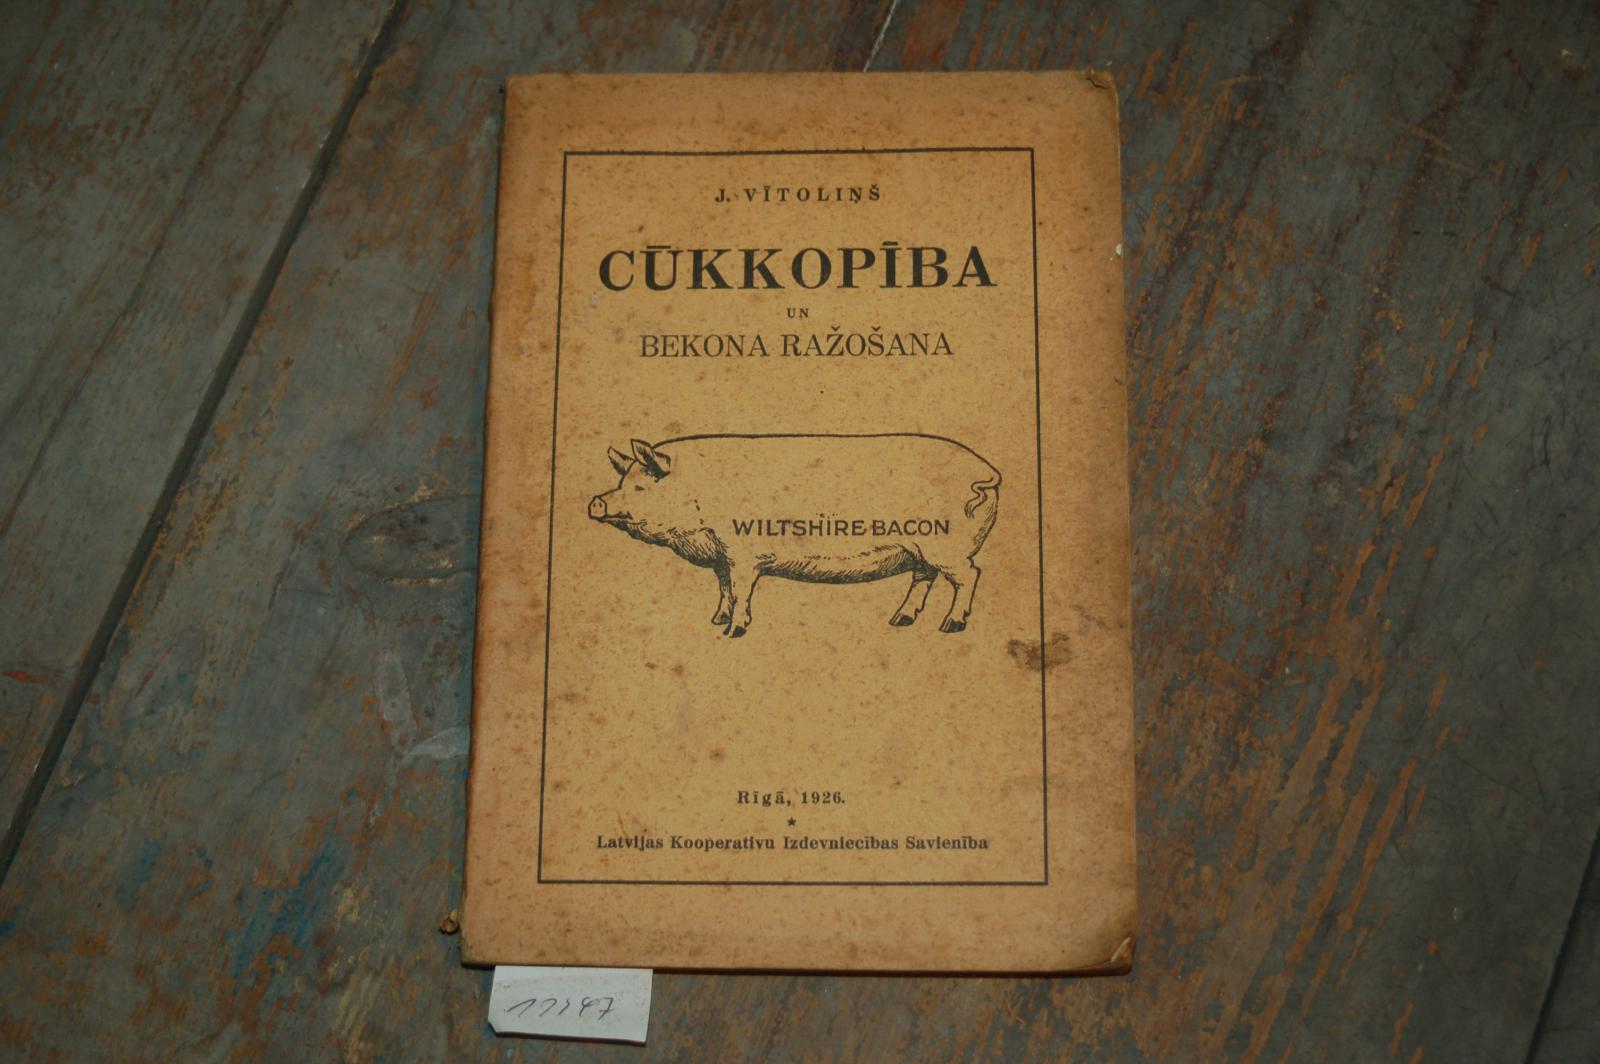 Vitolins J.  Cukkopiba un bekona razosana ( Schweinezucht und Schinkenproduktion) Wiltshire bacon 